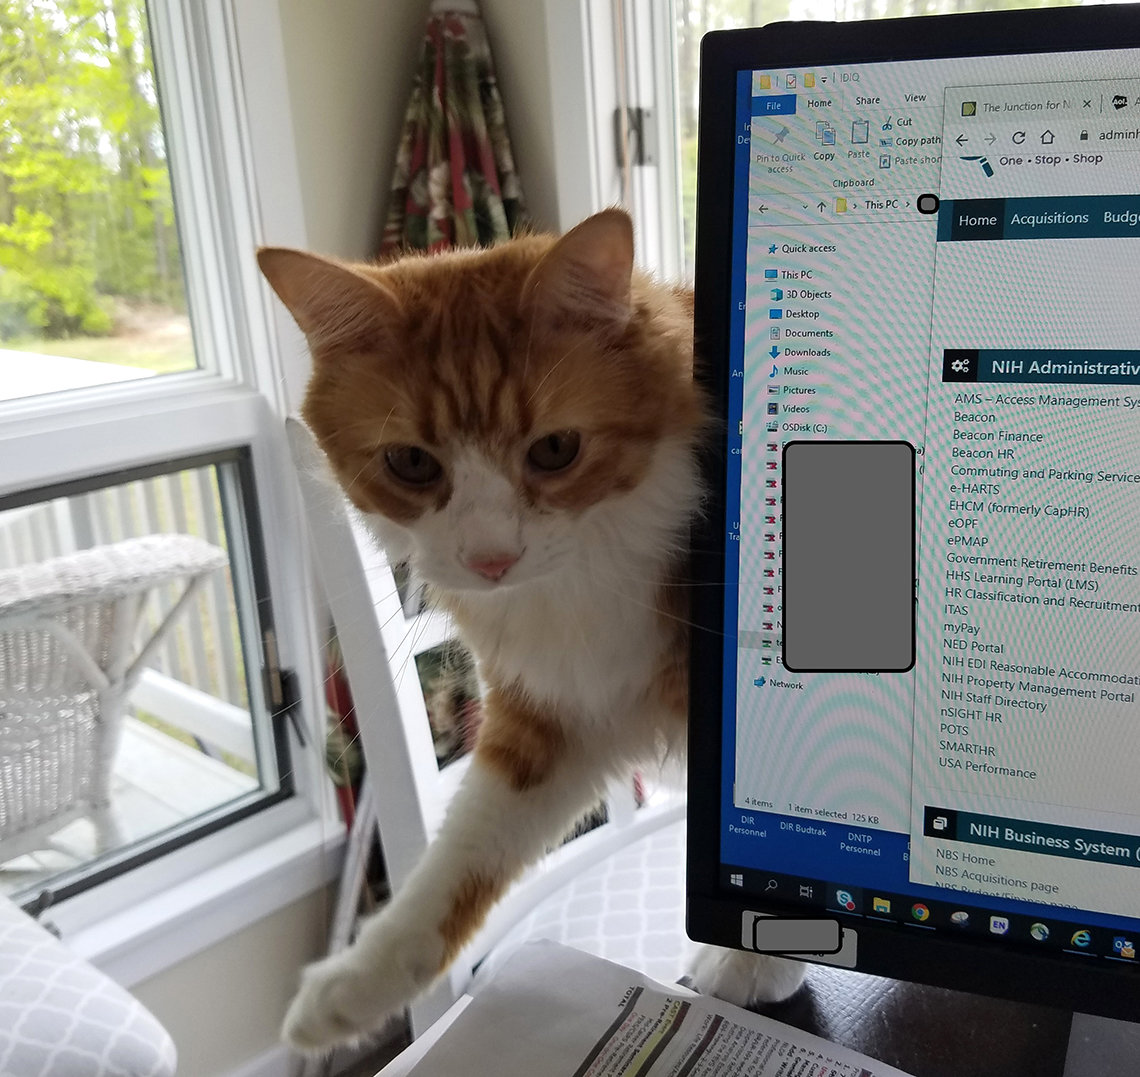 Cat peeking around computer screen